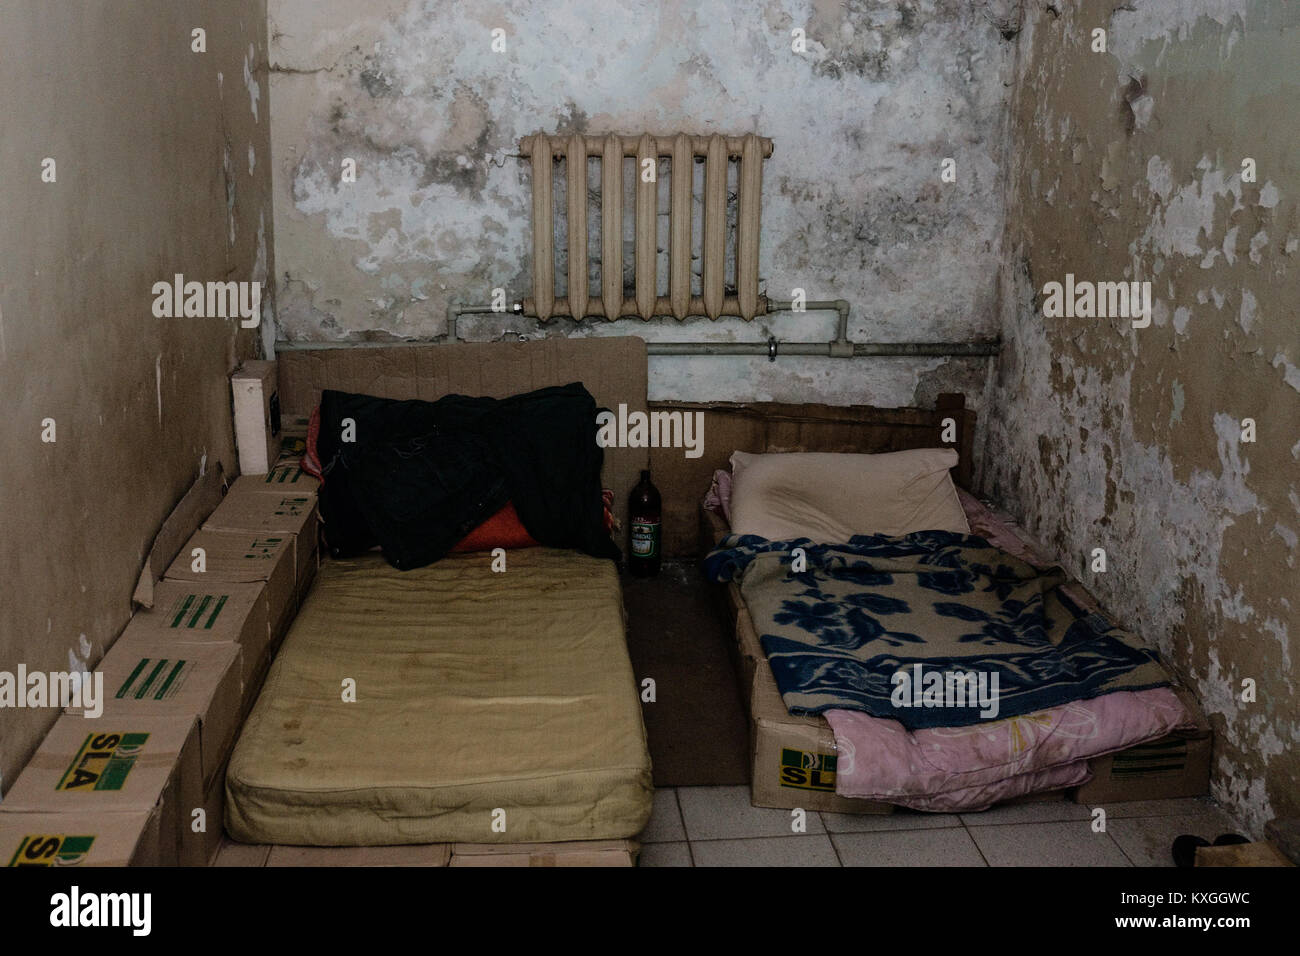 Donbass Donetsk, Ukraine. Apr 15, 2015. Deux hommes vivent dans cette petite chambre, mais ils n'étaient pas là pour le moment.Le conflit entre la Fédération et les rebelles des forces dans le bras ukrainien Donbass Région de l'Est de l'Ukraine a été la carbonisation sur depuis 2014. Des dizaines de milliers de résidents a fait des sans-abri en raison de ce conflit et beaucoup cherchent la sécurité dans les bunkers souterrains en cas de bombardement. Credit : Yves Choquette/SOPA/ZUMA/Alamy Fil Live News Banque D'Images